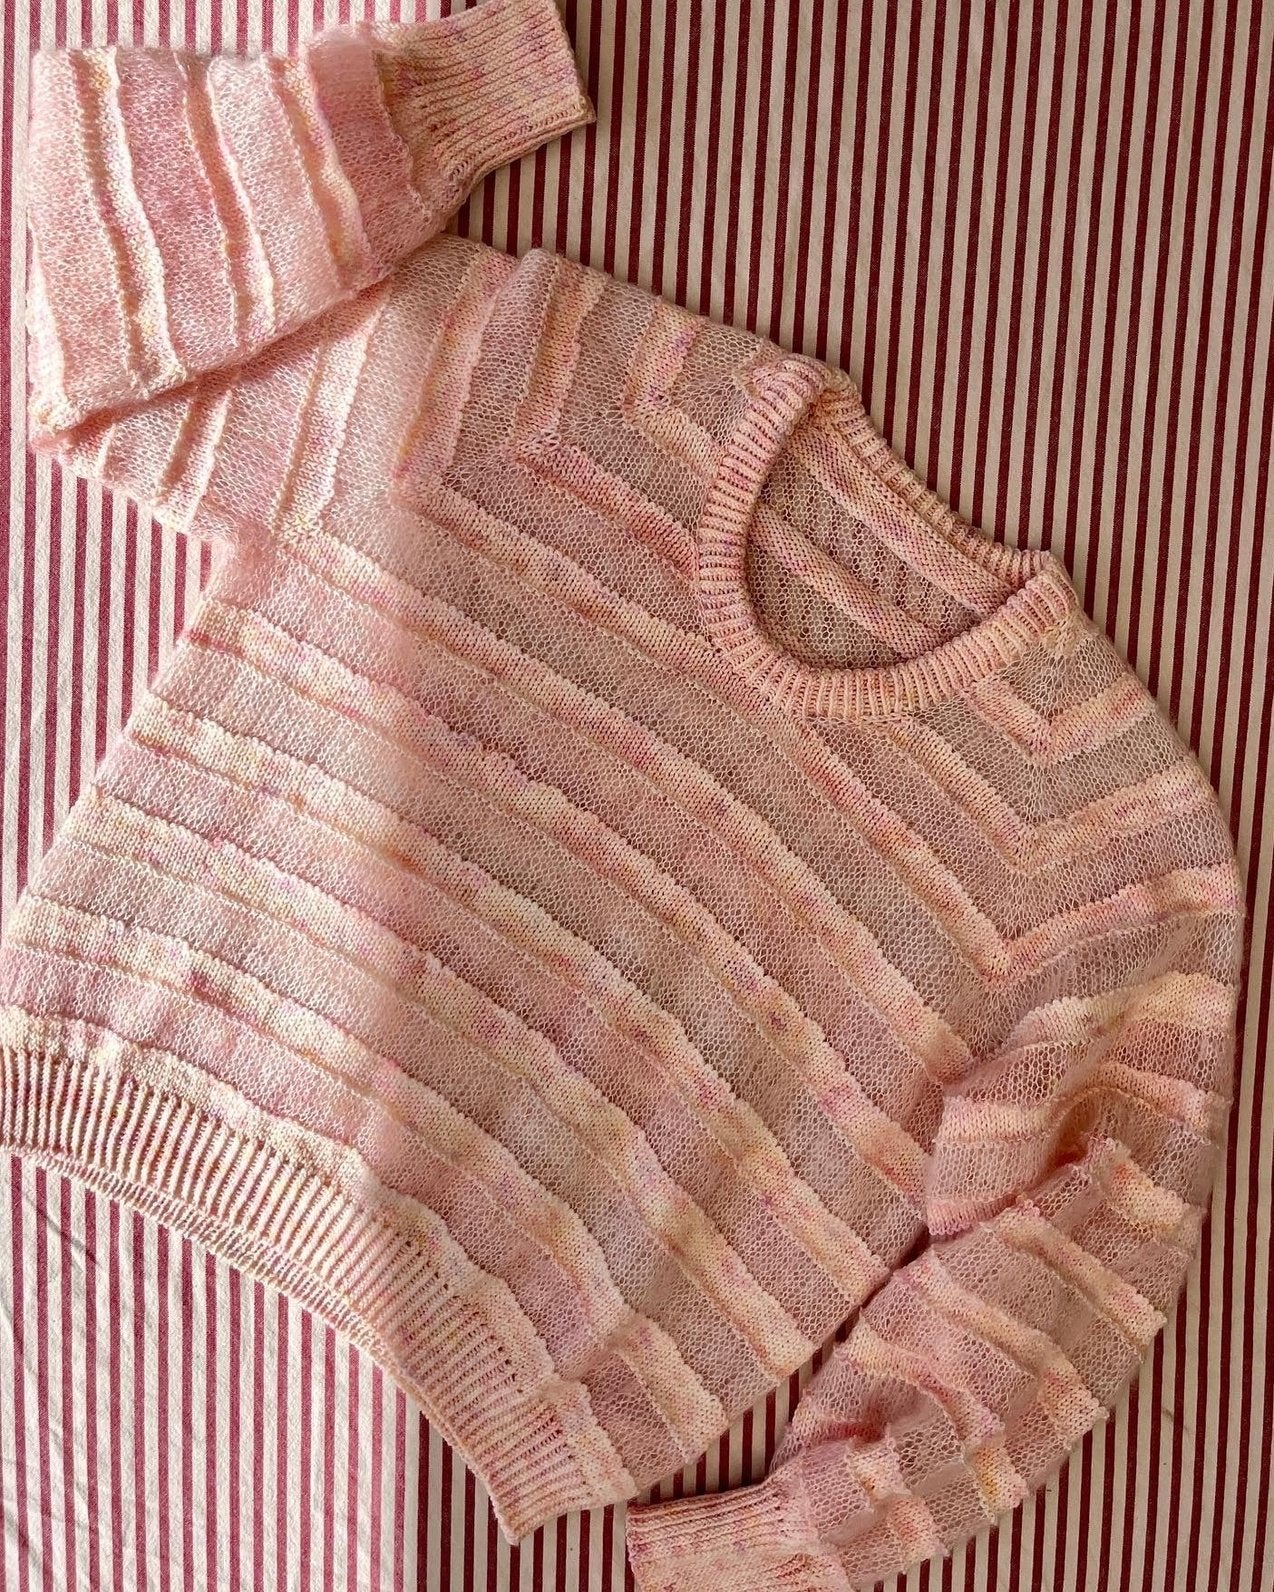 Straight Up Sweater Norsk Popknit strikkeoppskrift